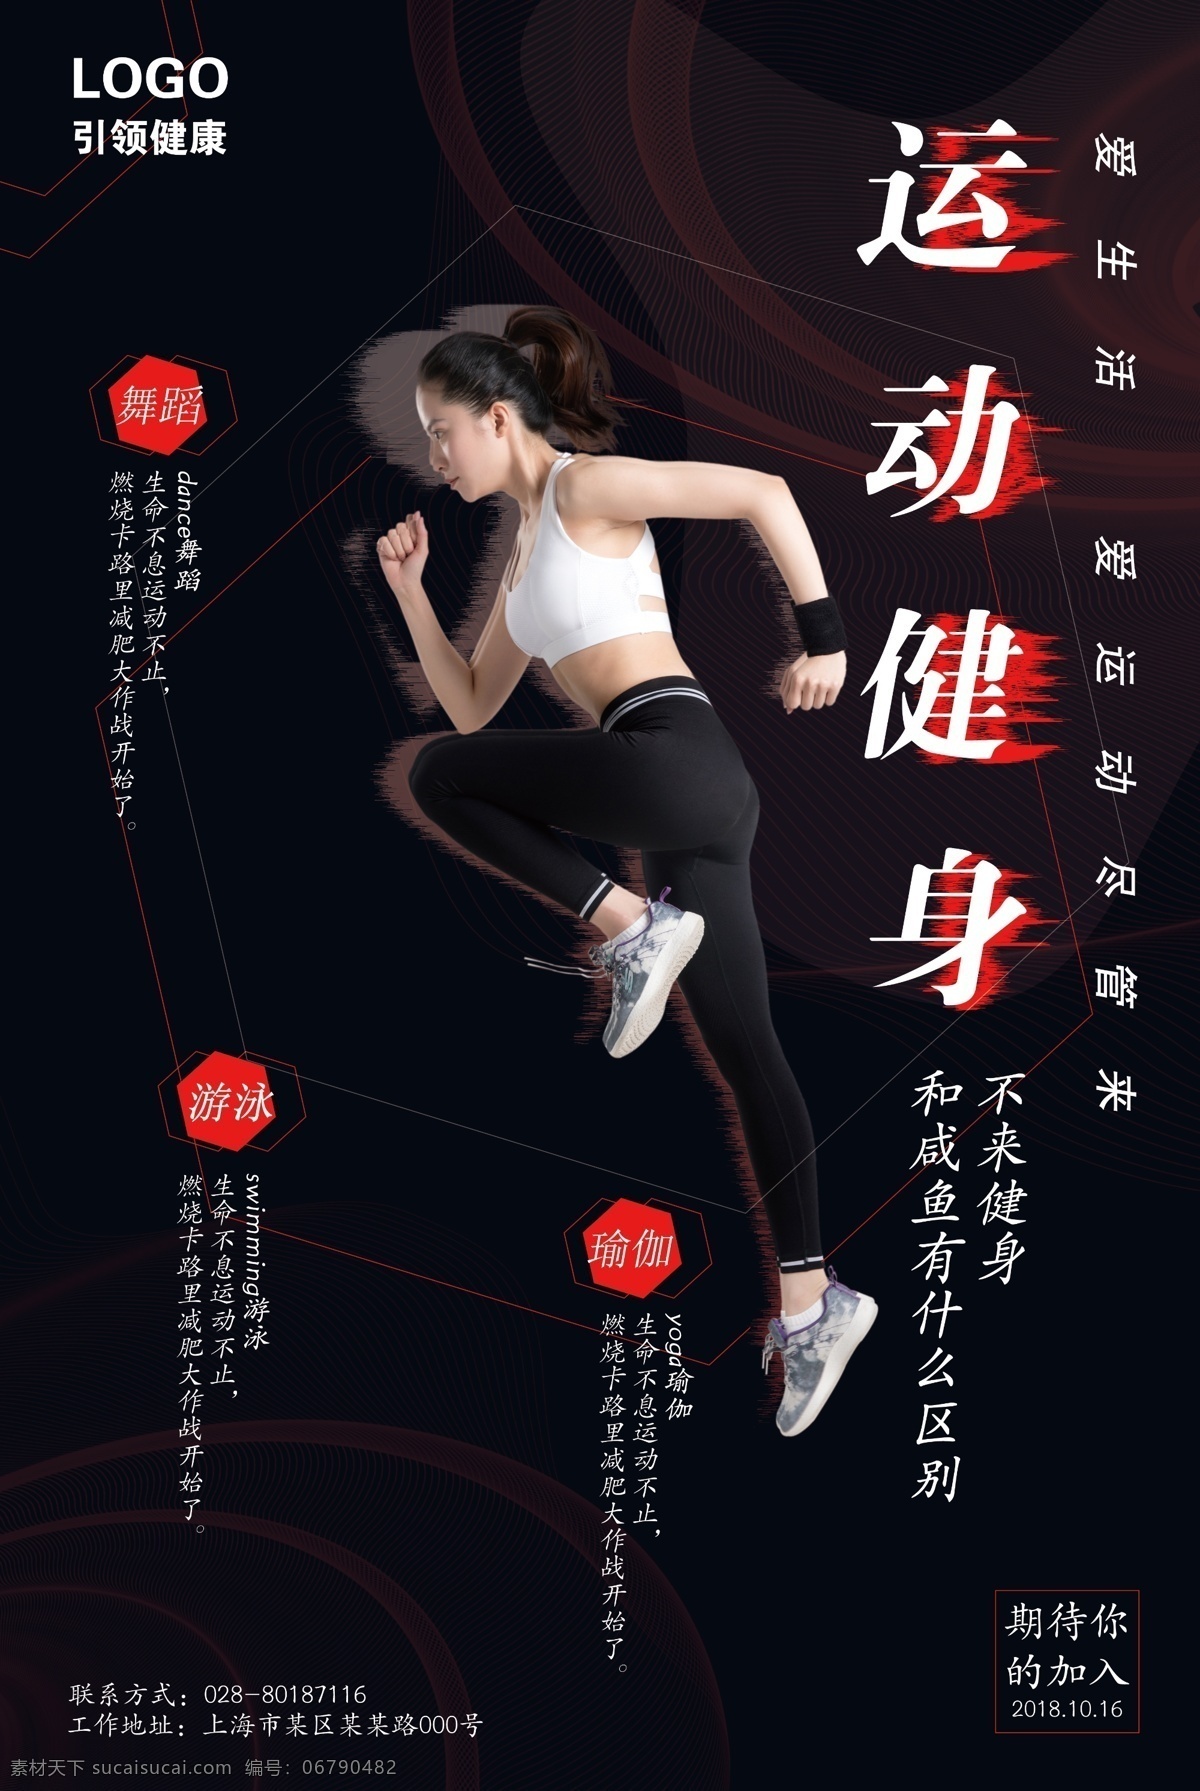 健身运动海报 健身 运动 简洁 线条 故障风 抖音风 跑步 运动健身 海报